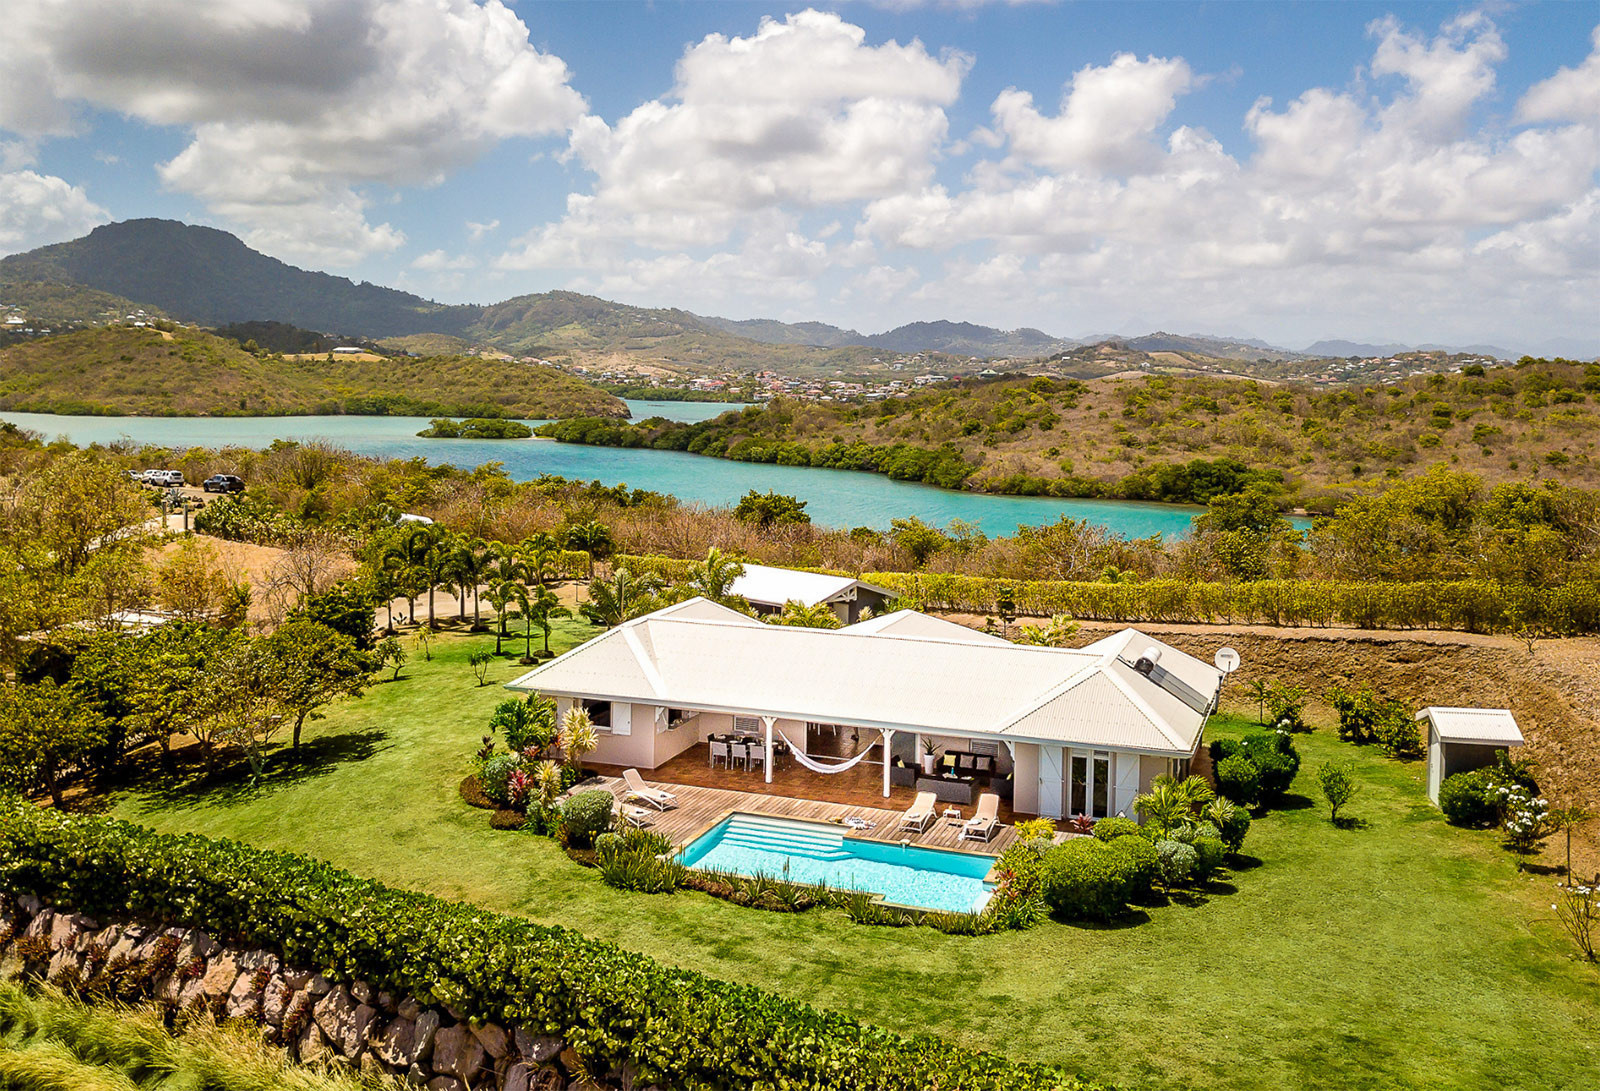 Palmier Azur rental Martinique luxury villa le Vauclin pool sea view - 